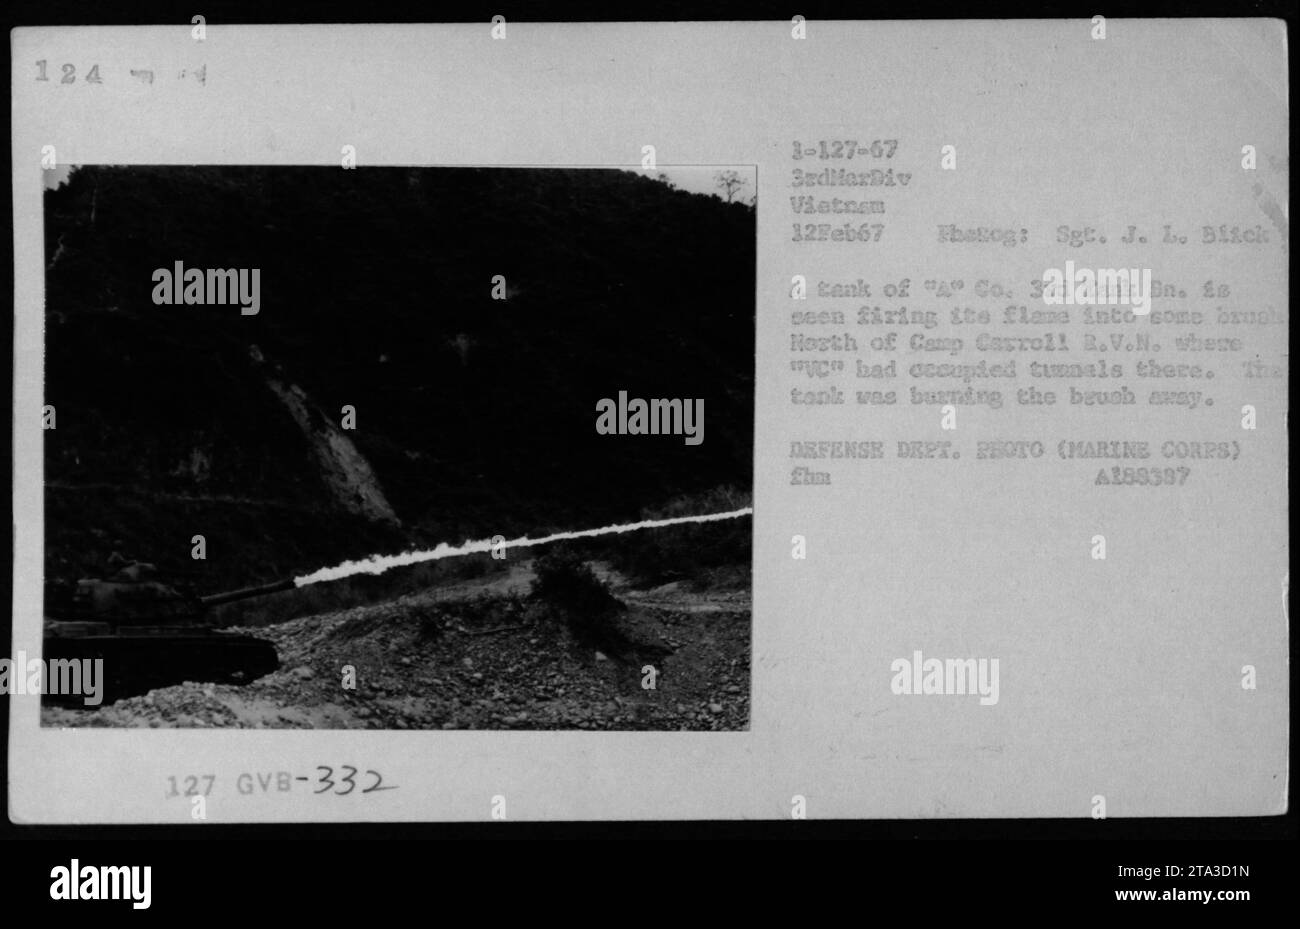 Bildunterschrift: 'Ein Tank aus Einem Co. 3. Tank Bn. Feuert seinen Flammenwerfer ab, um die Vegetation nördlich von Camp Carroll, B.V.N. während des Vietnamkriegs zu löschen. Truppen hatten Tunnel in der Gegend besetzt und der Panzer brannte die Bürste ab. Februar 1967. Foto von Sgt. J. L. Blick. VERTEIDIGUNGSABTEILUNG. FOTO (MARINE CORPS).“ Stockfoto